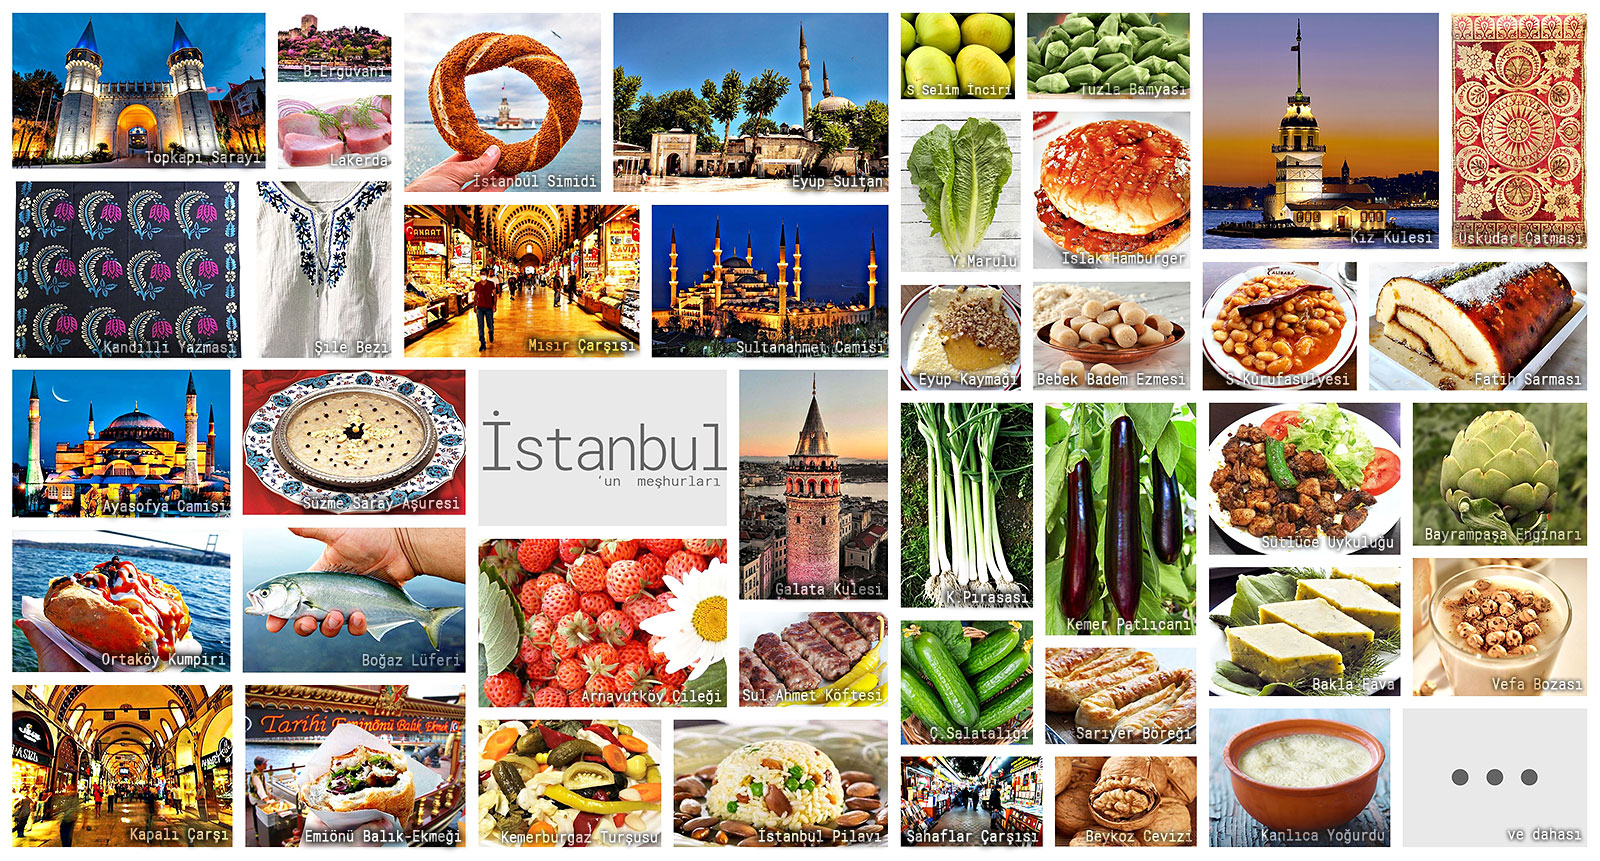 İstanbul'un meşhur şeylerini gösteren resimlerden oluşan kolaj